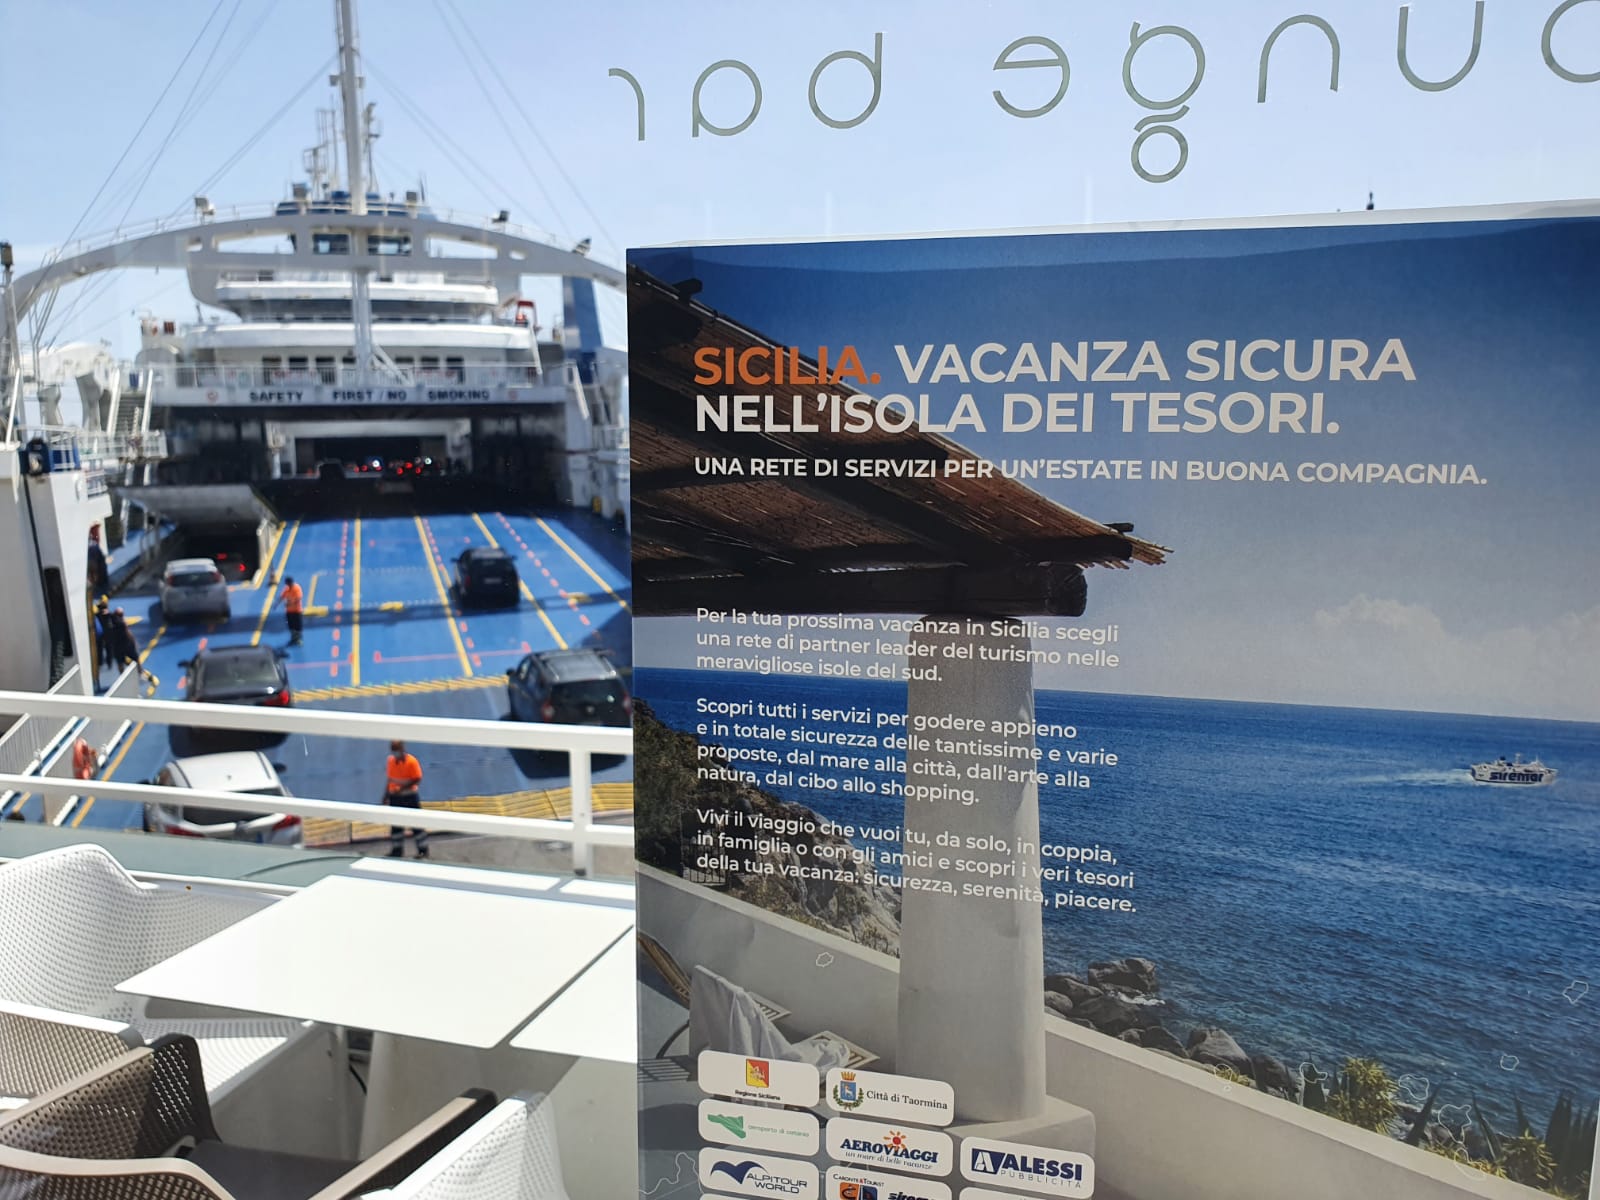 SiciliaVacanzaSicura, un network per promuovere il turismo nell'isola dei tesori